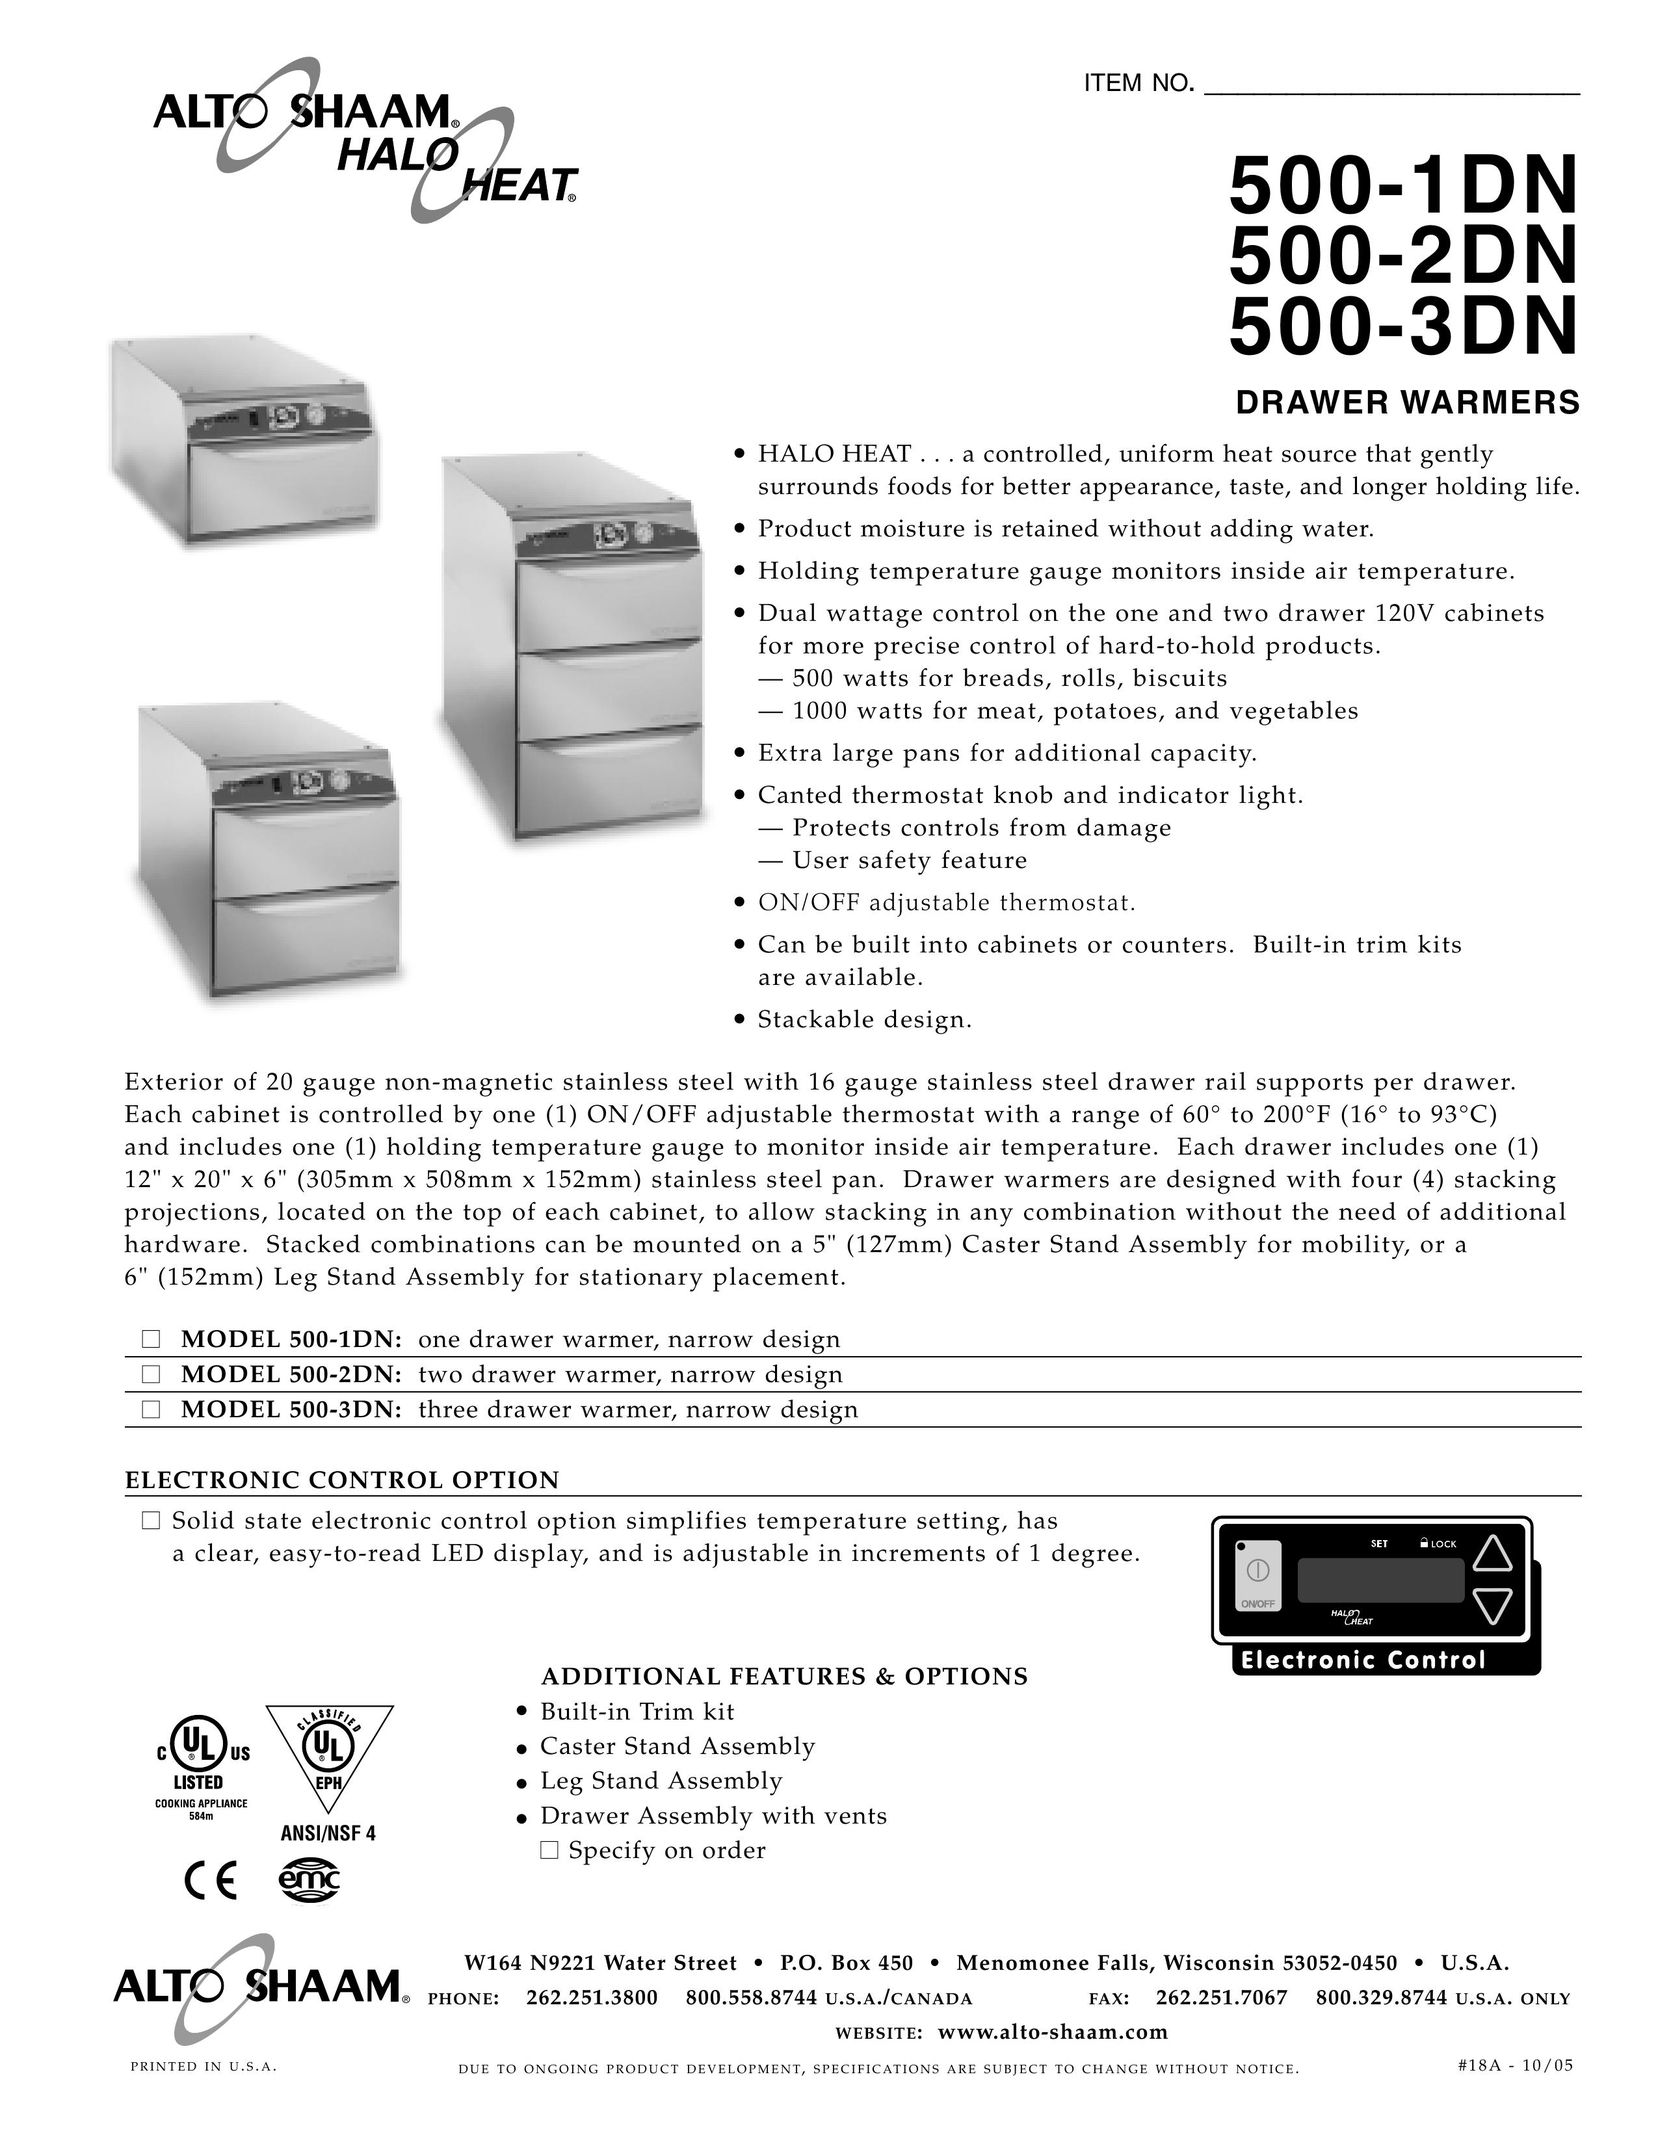 Alto-Shaam 500-2DN Food Warmer User Manual